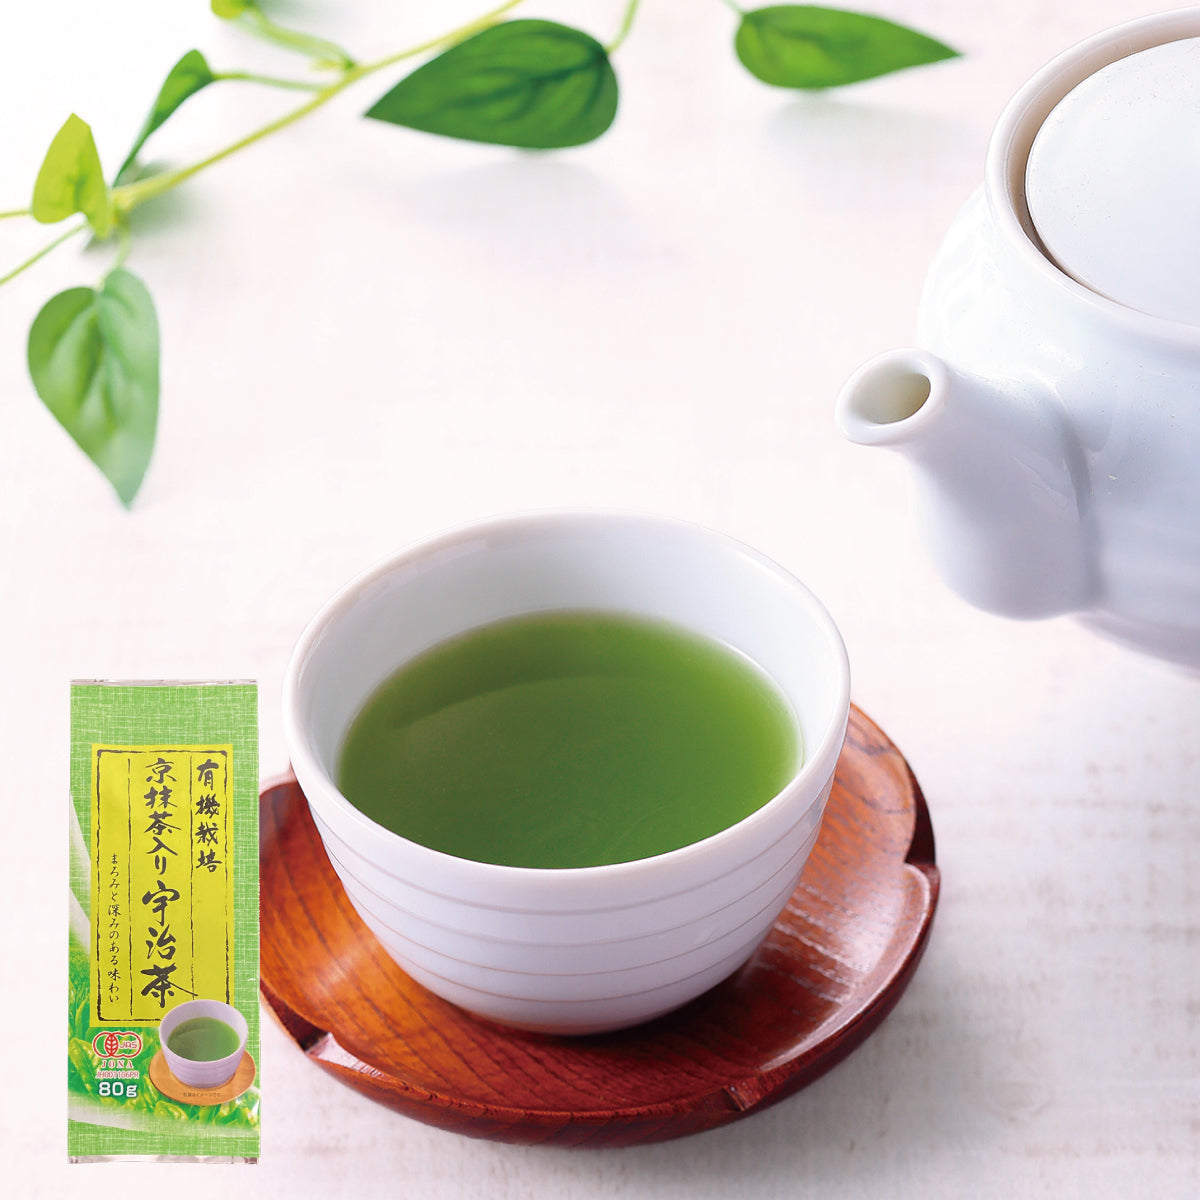 緑茶 日本茶 煎茶 ティーバッグ 有機栽培 宇治抹茶入緑煎茶ティー